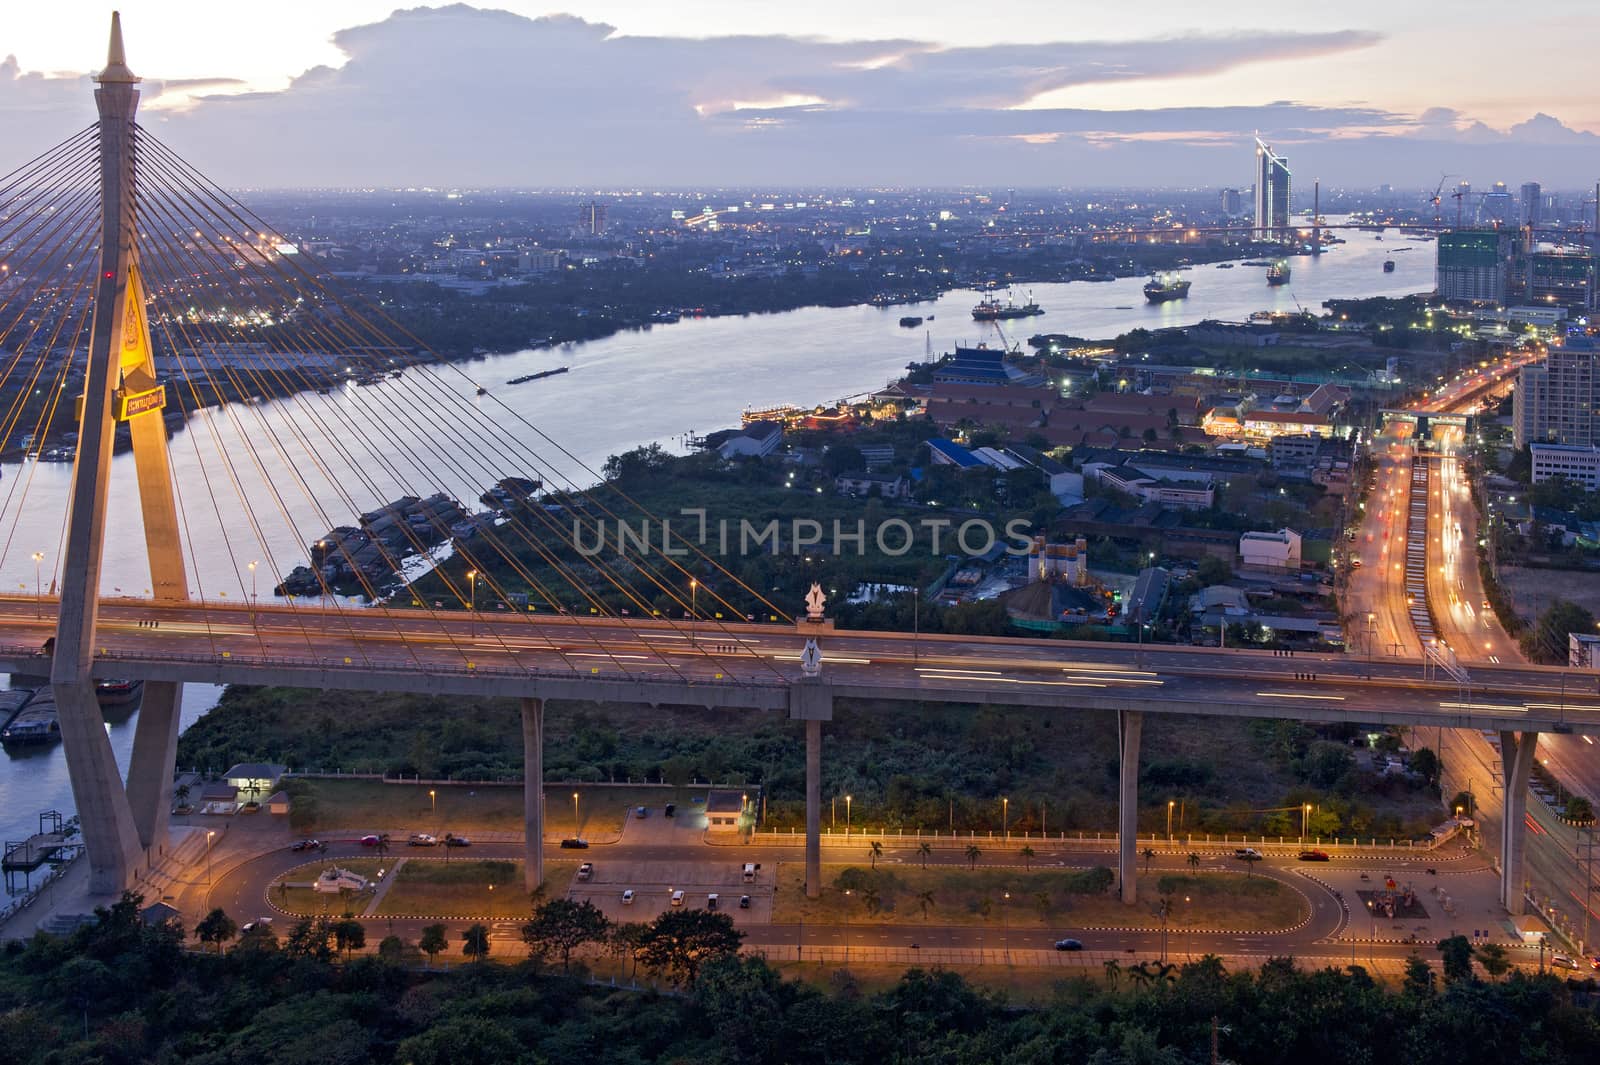 Bhumibol Bridge (the Industrial Ring Road Bridge) in Thailand